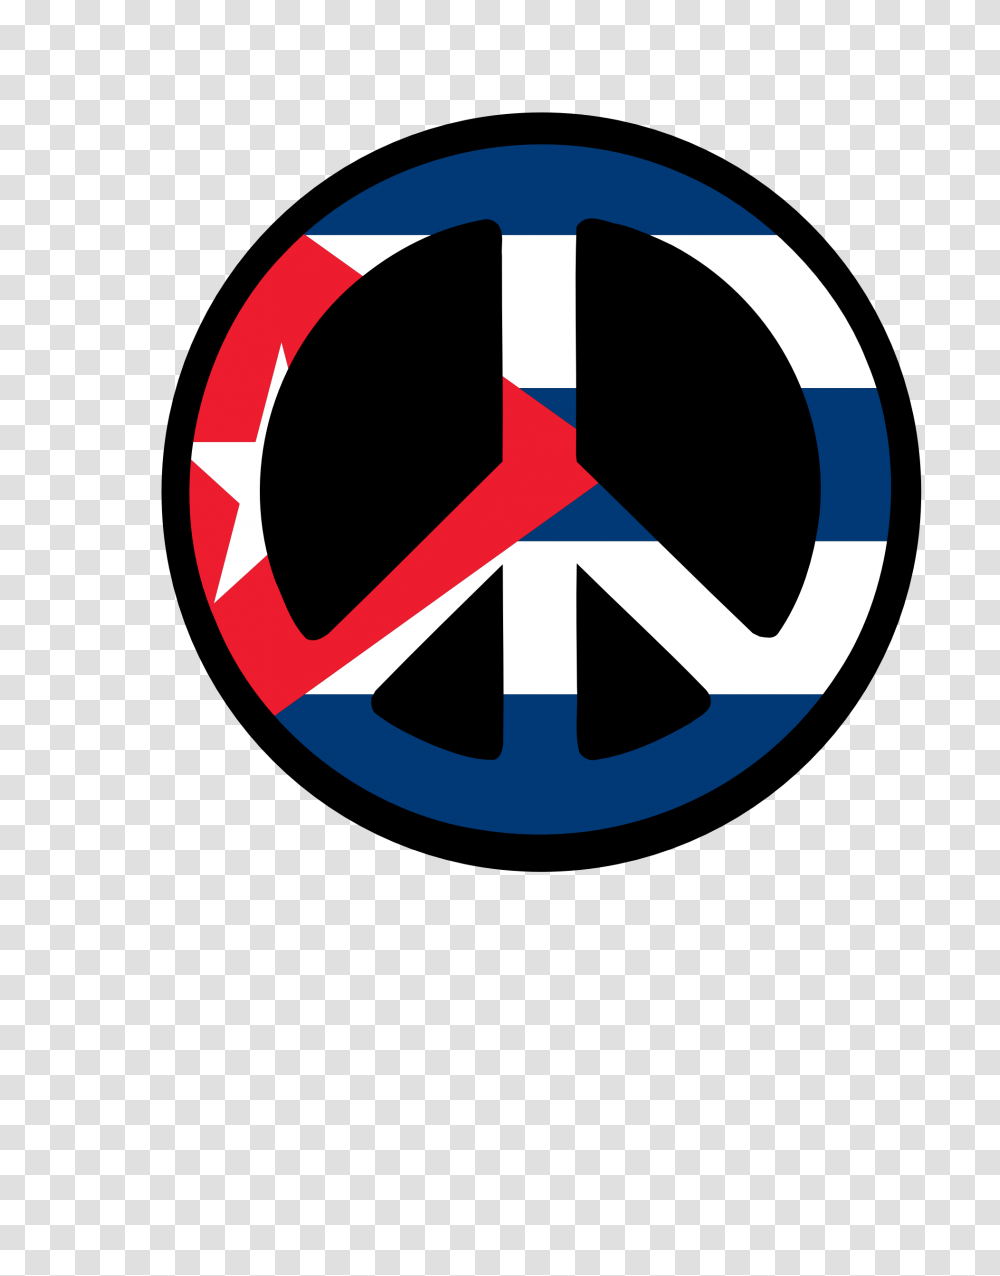 Dominican Republic Flag Clipart, Logo, Trademark, Star Symbol Transparent Png